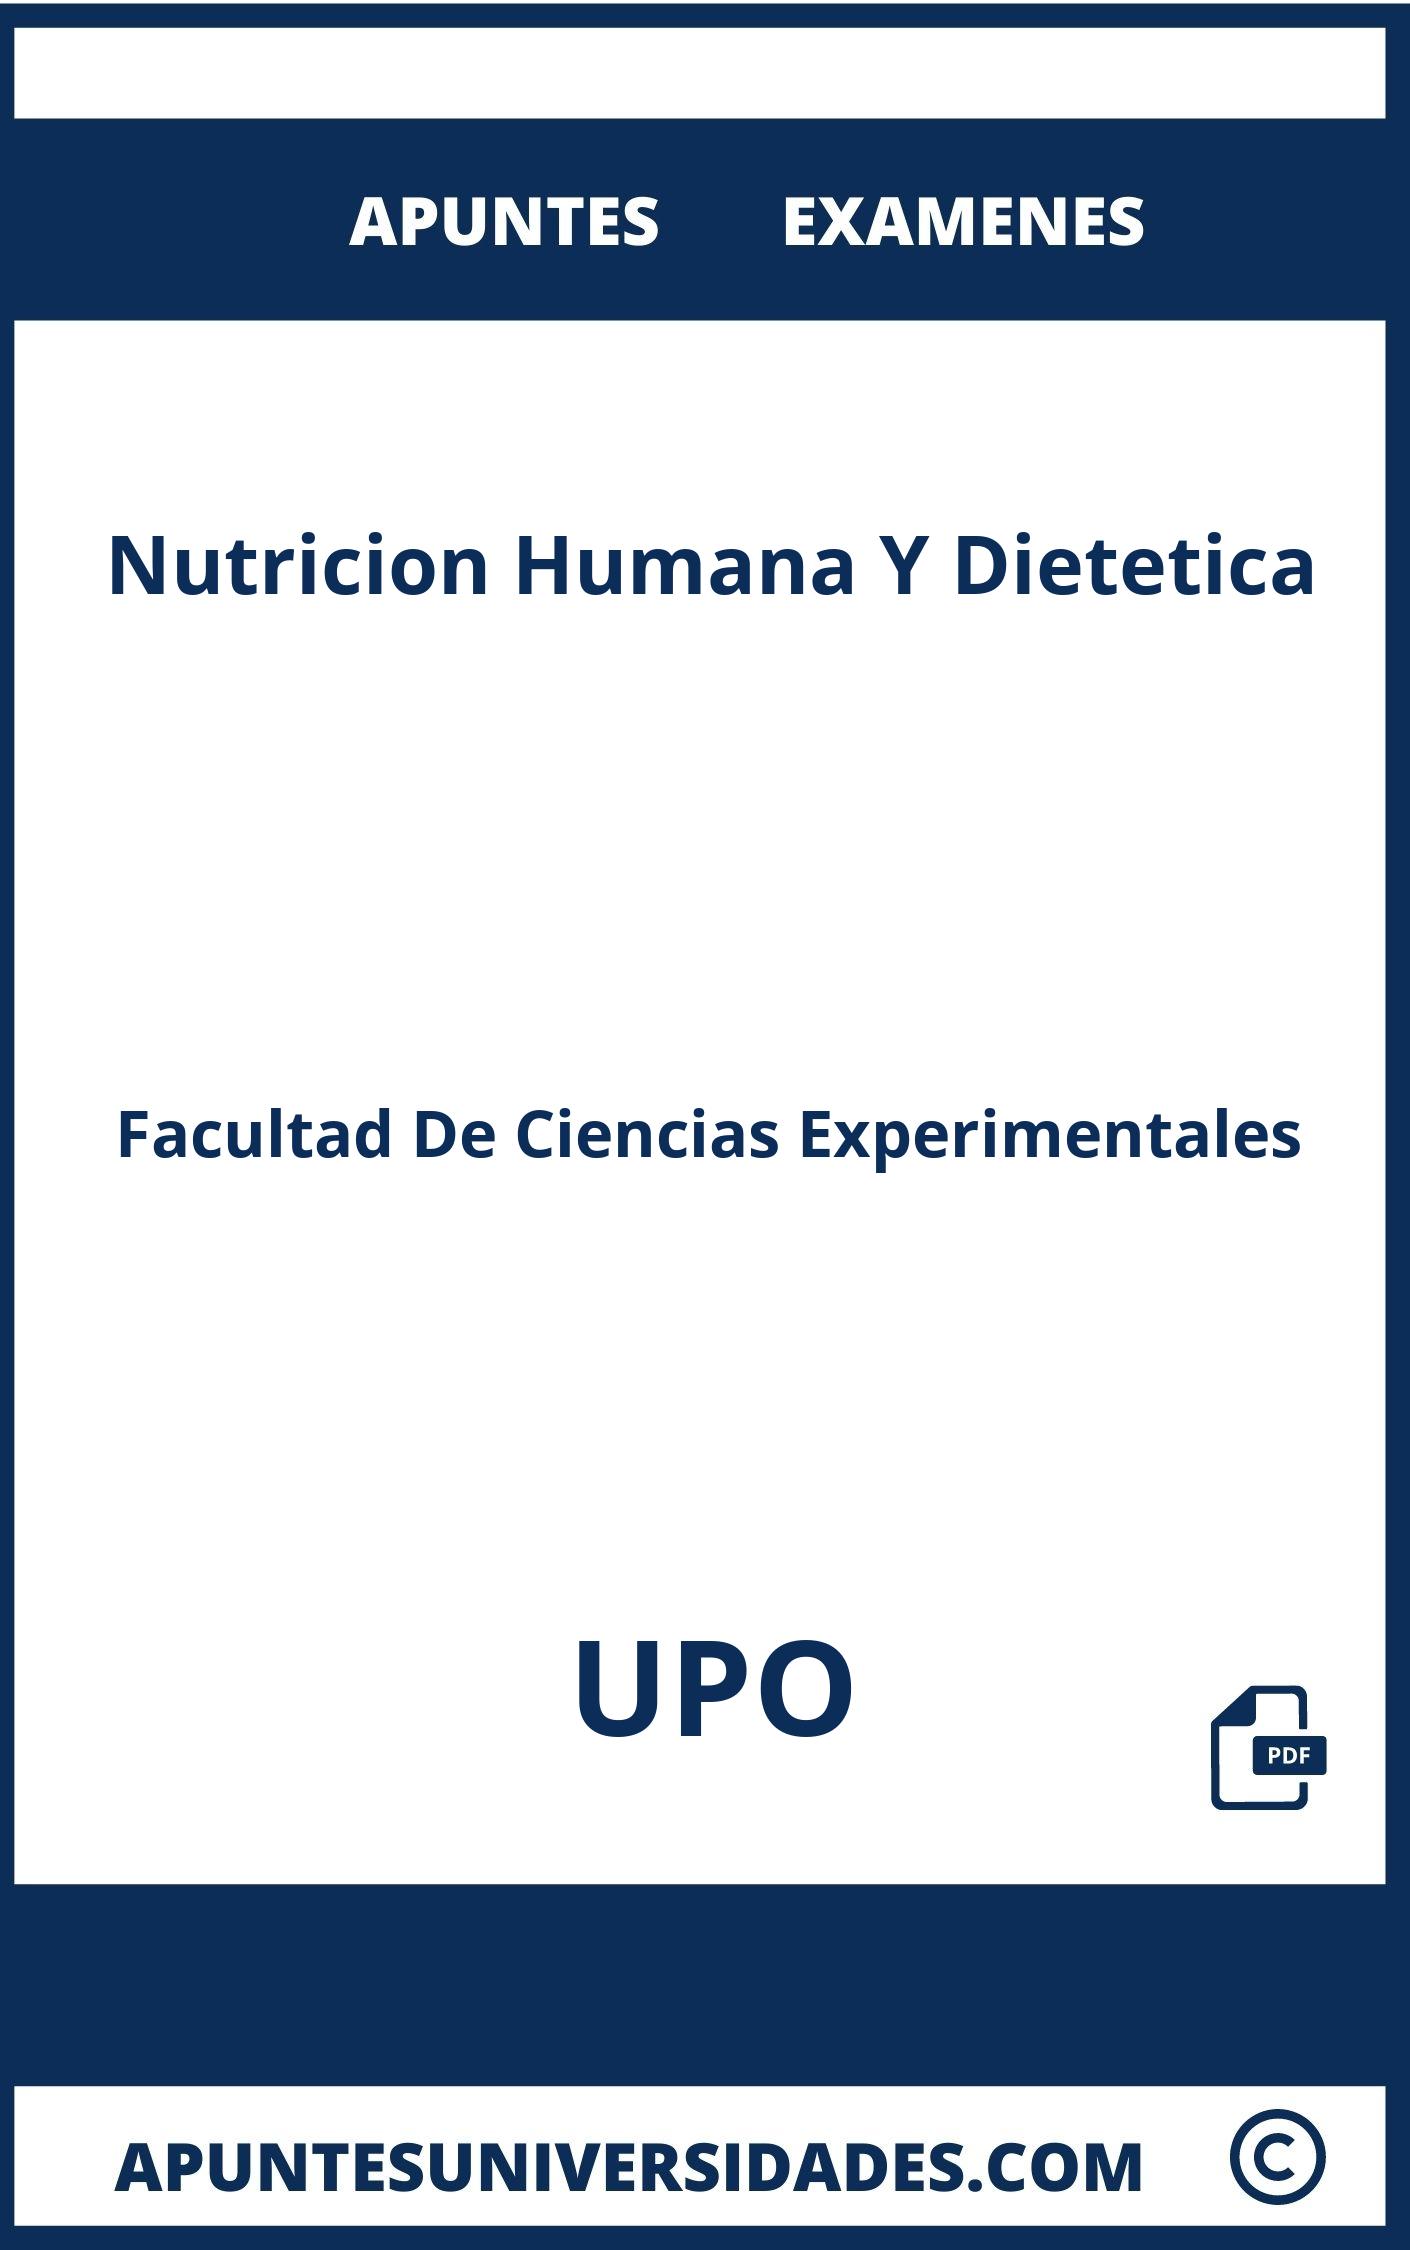 Examenes y Apuntes Nutricion Humana Y Dietetica UPO